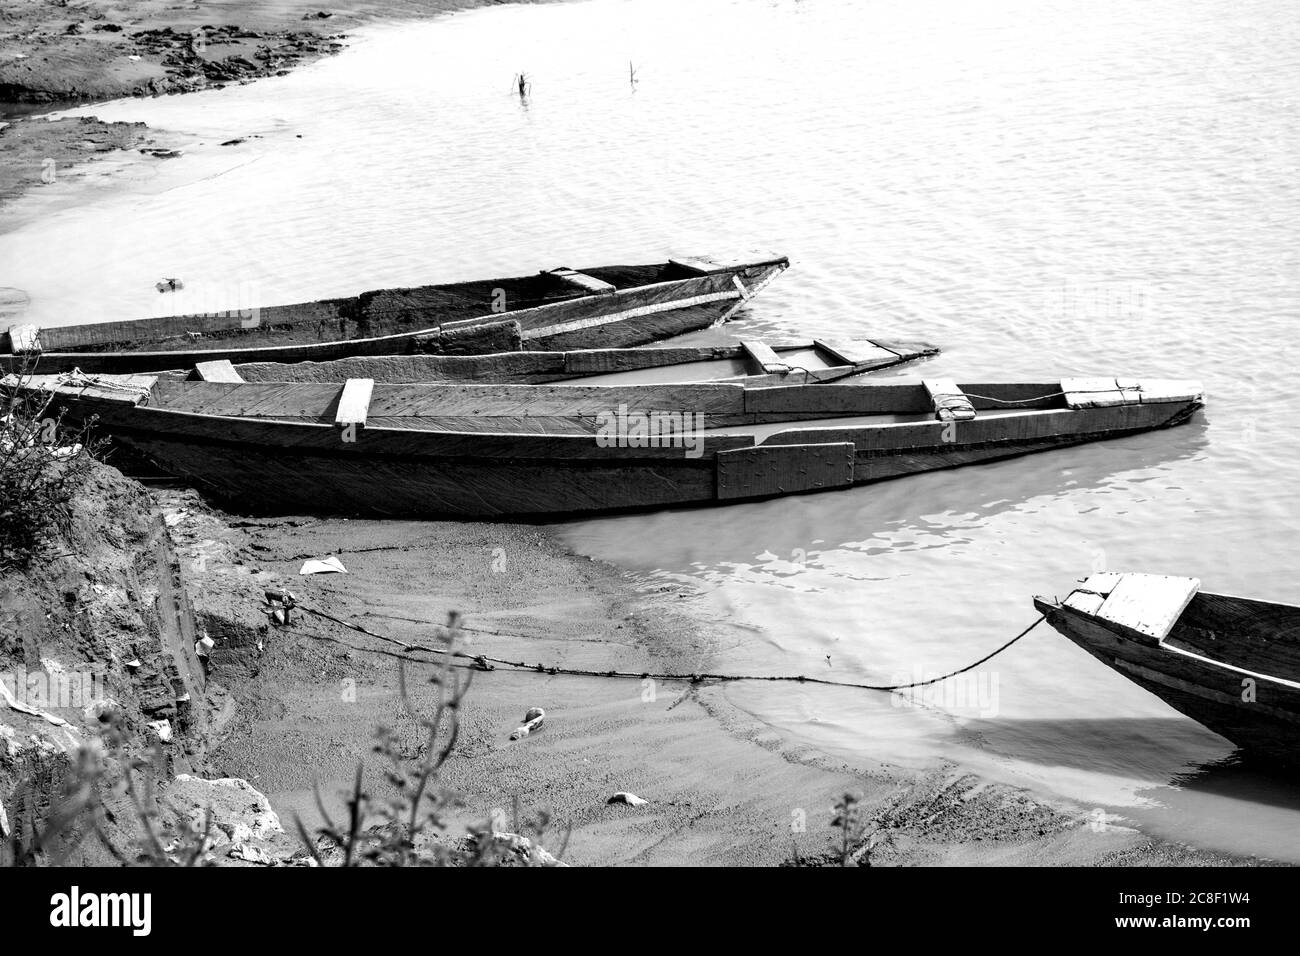 Barche di legno vicino ad un fiume. Questa immagine contiene tre vecchie barche di legno attraccate vicino ad una riva del fiume. Foto Stock